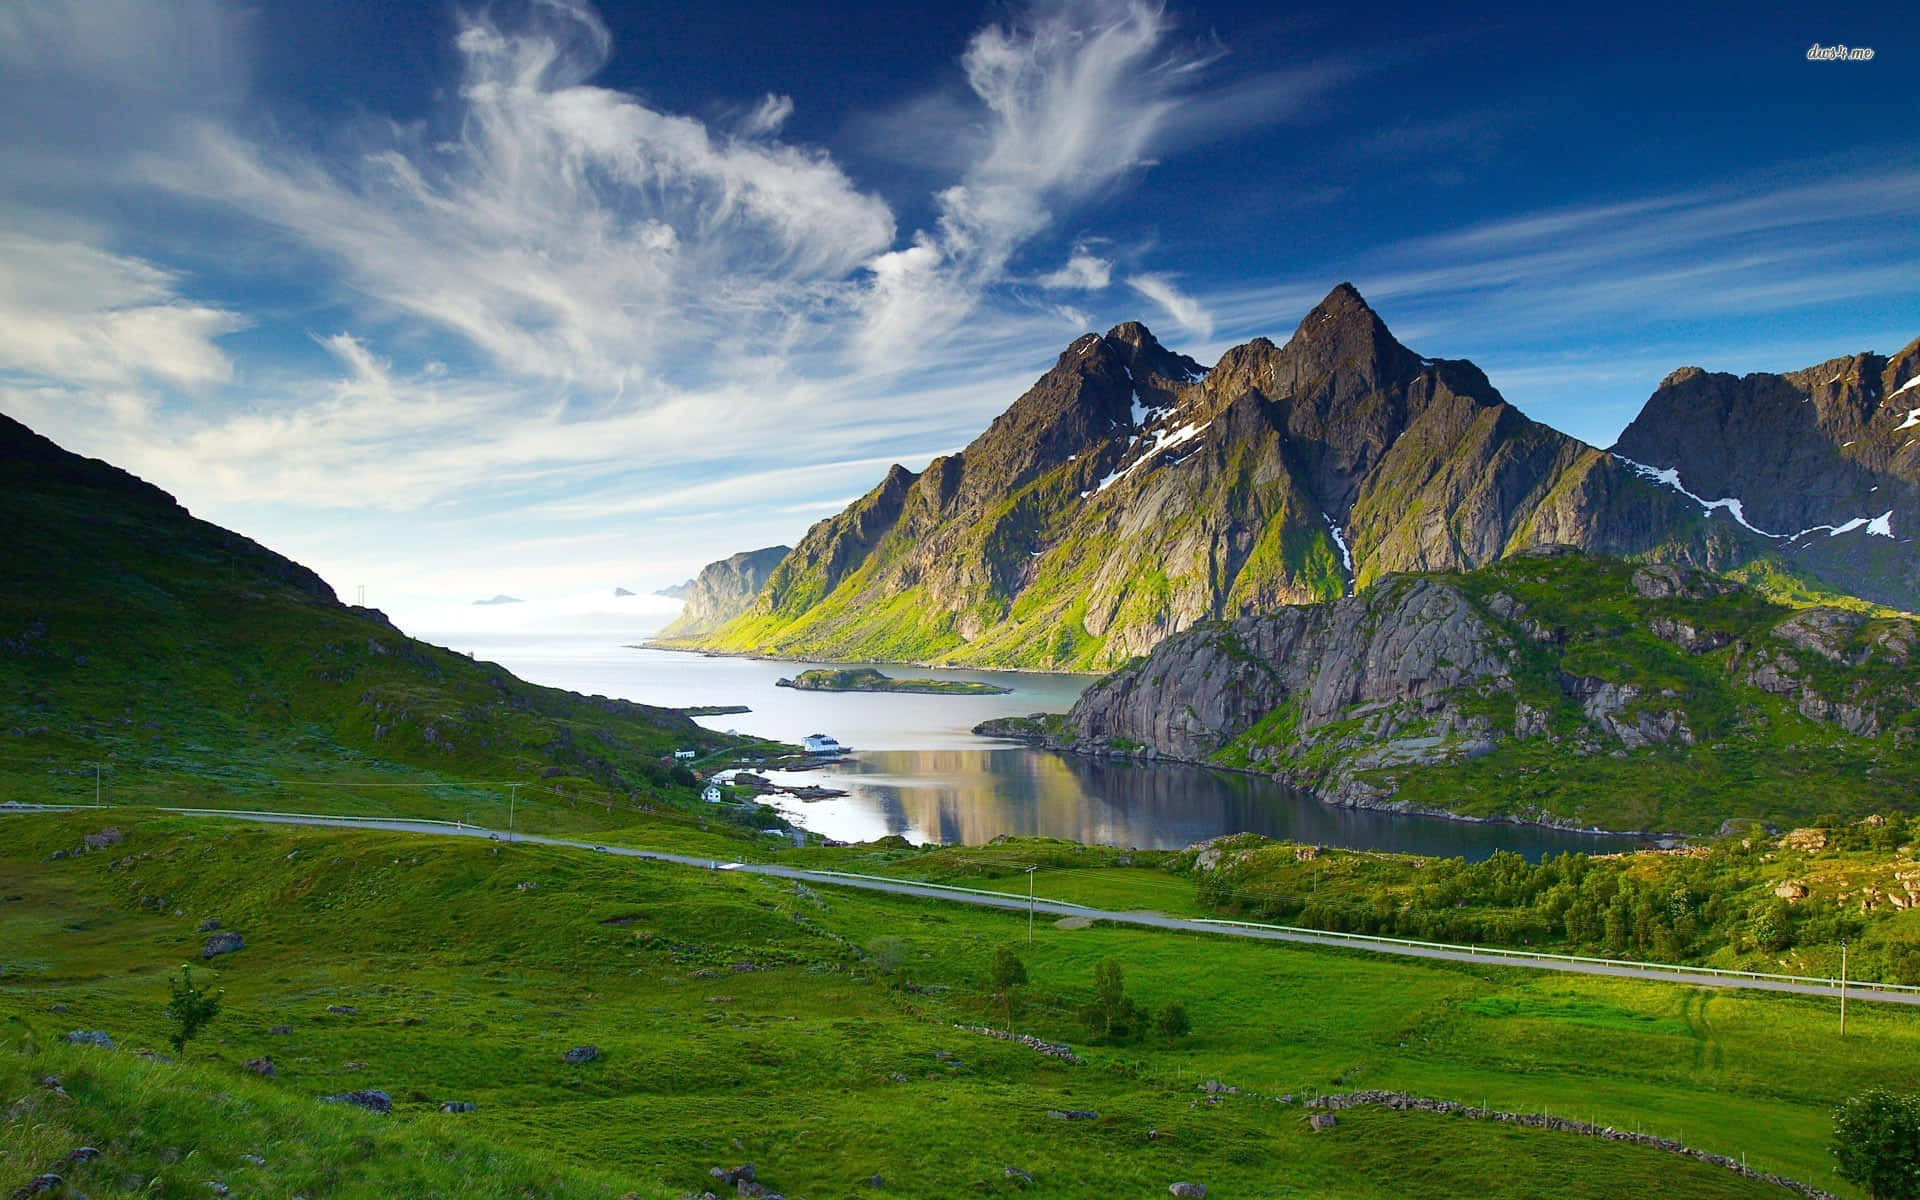 Genießensie Den Atemberaubenden Ausblick Auf Majestätische Berge In Dieser Malerischen Landschaft. Wallpaper